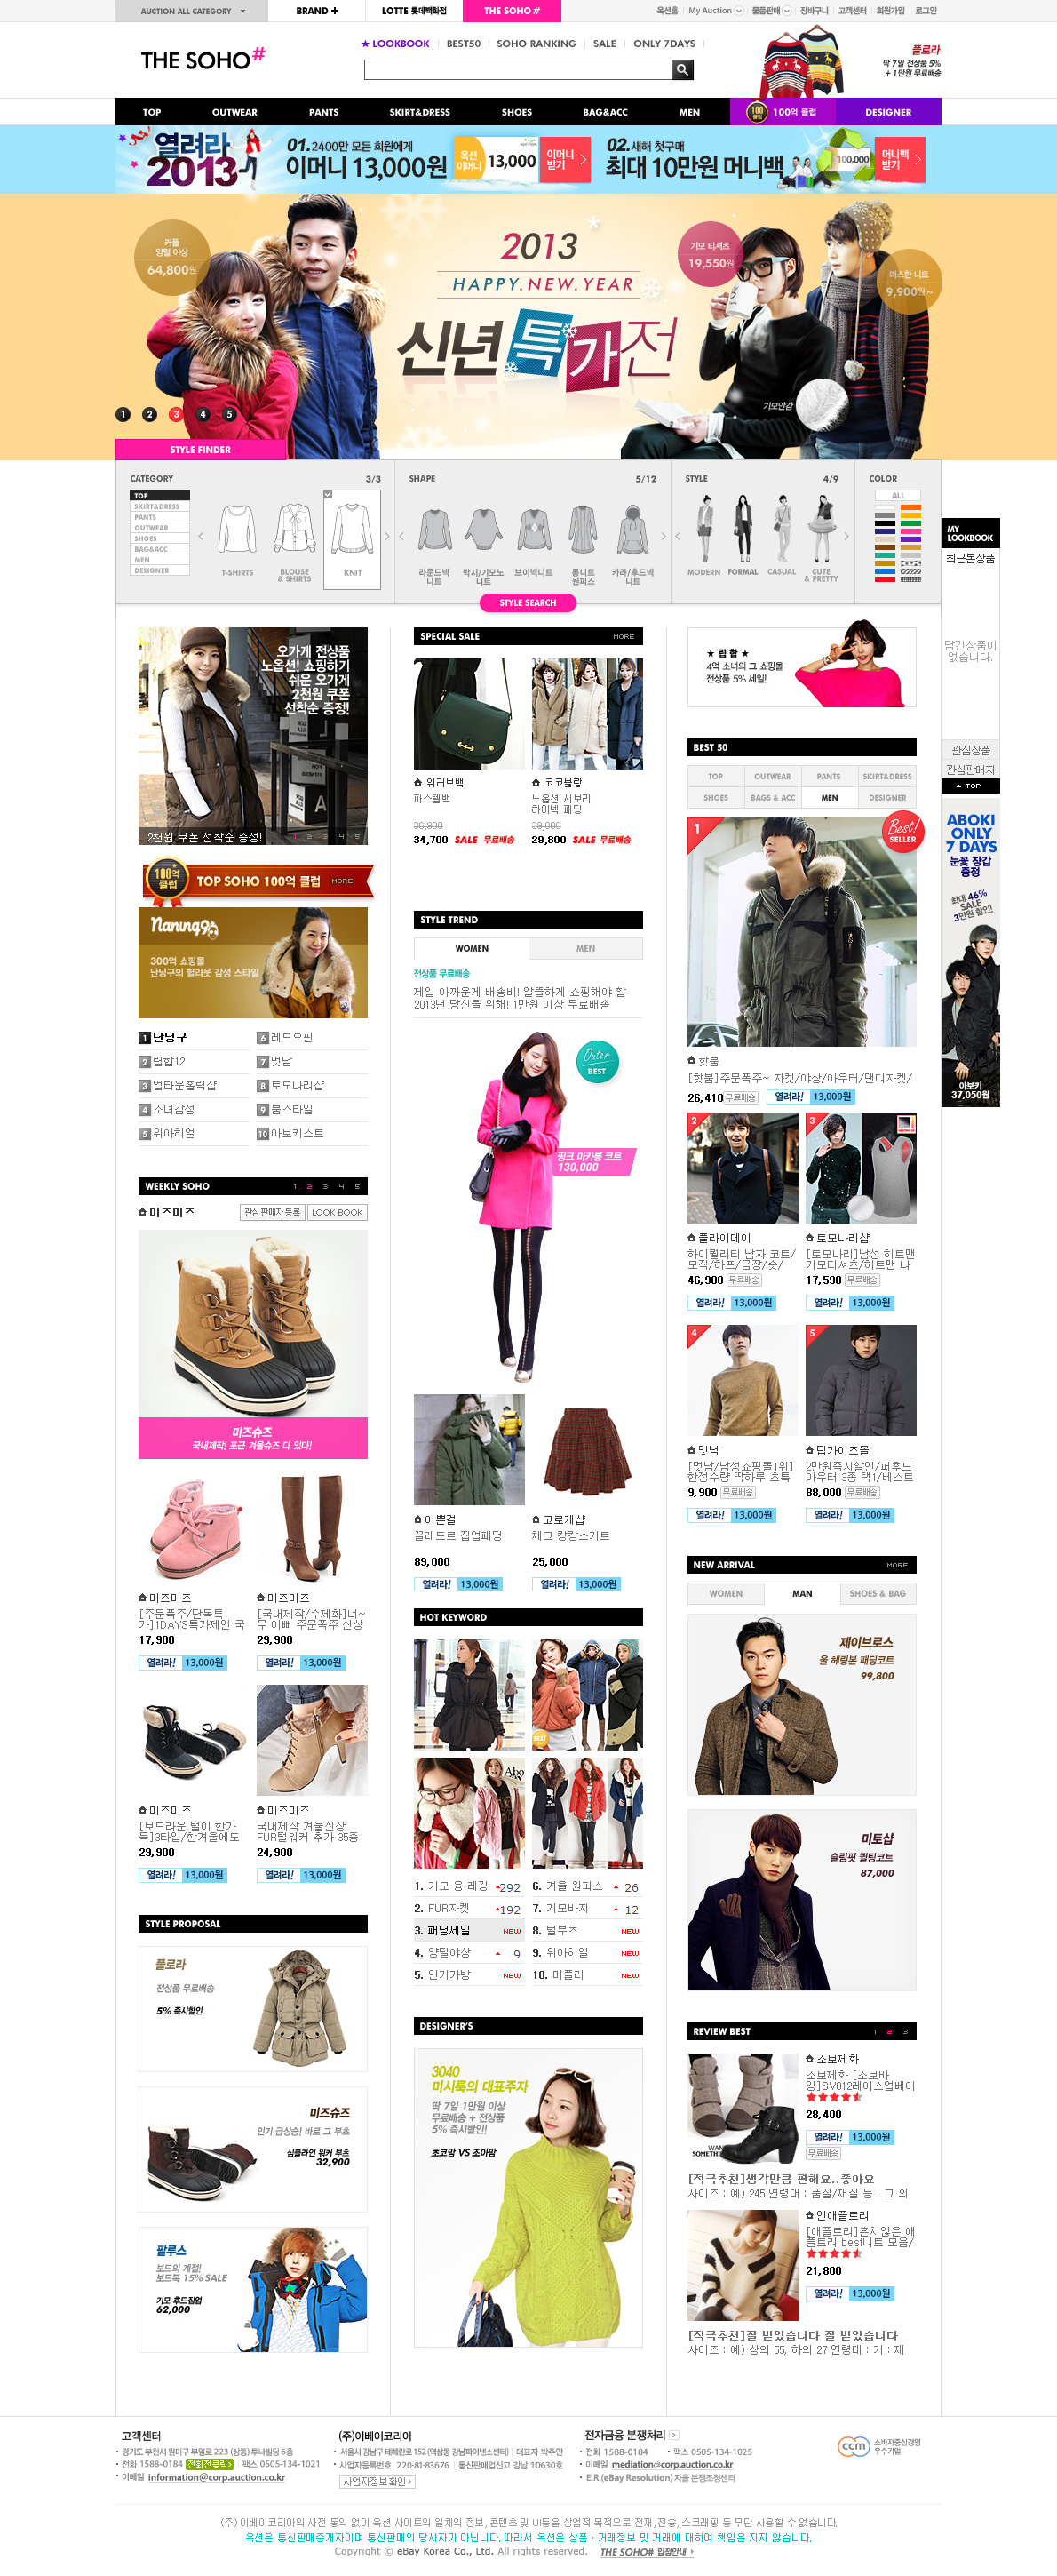 THE SOHO#韩国购物网站